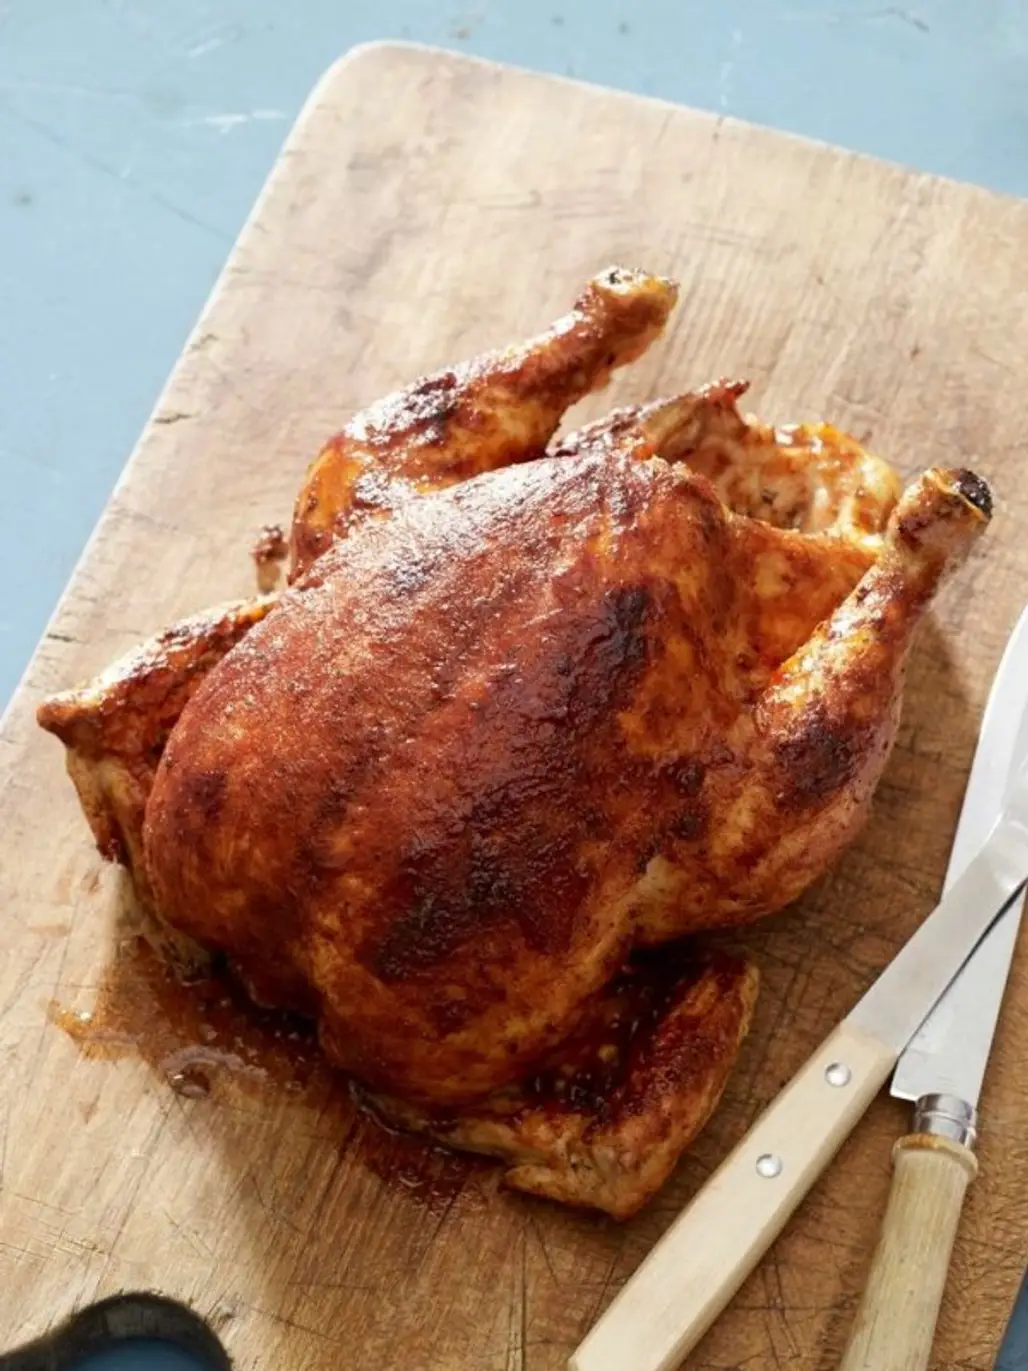 Use a Rub on the Turkey